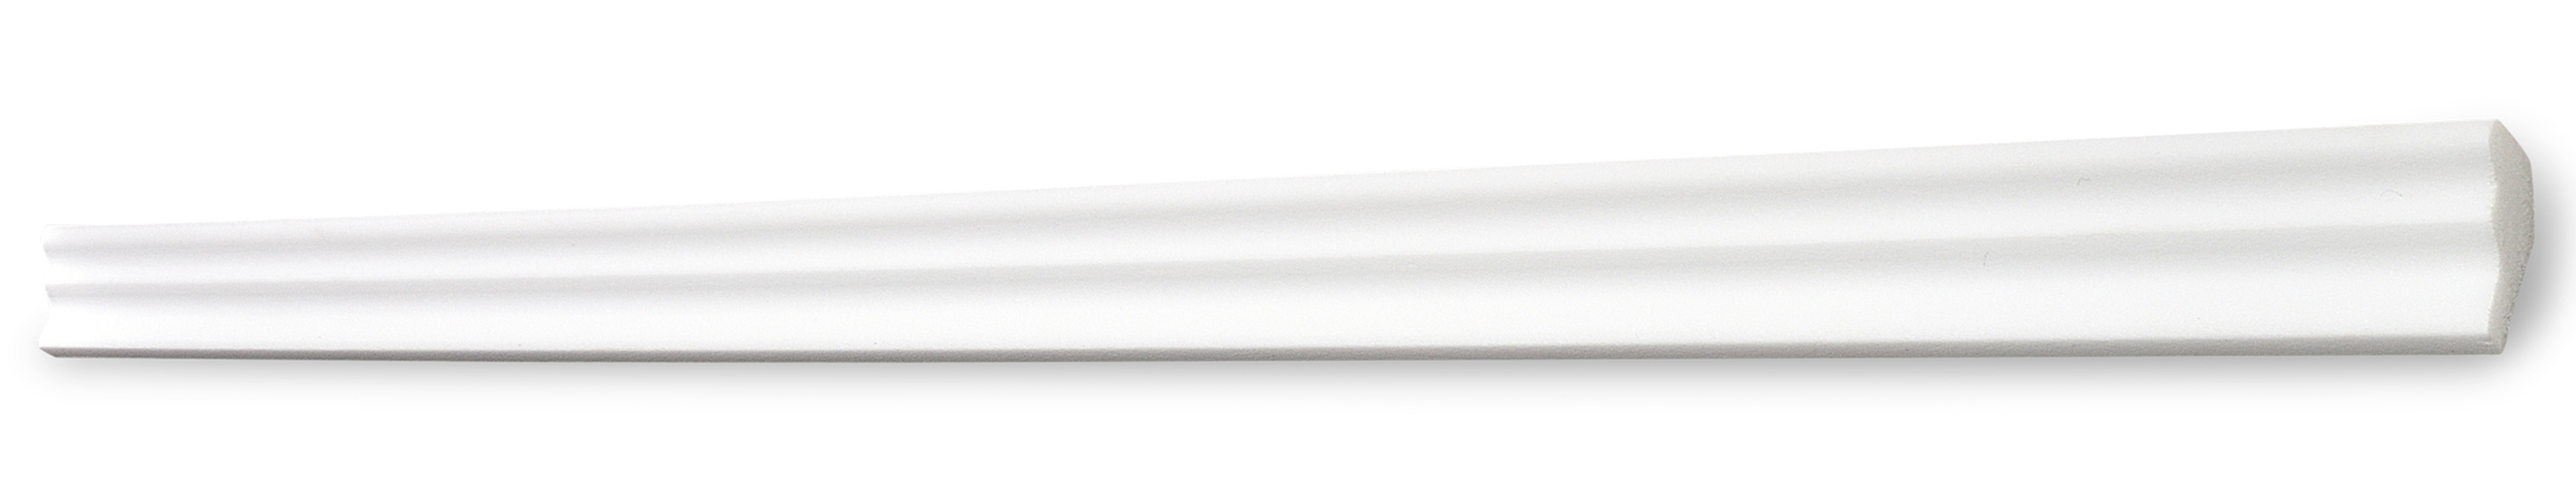 Decosa Zierprofil E25 (Sabrina), weiß, 15 x 25 mm, Länge: 2 m